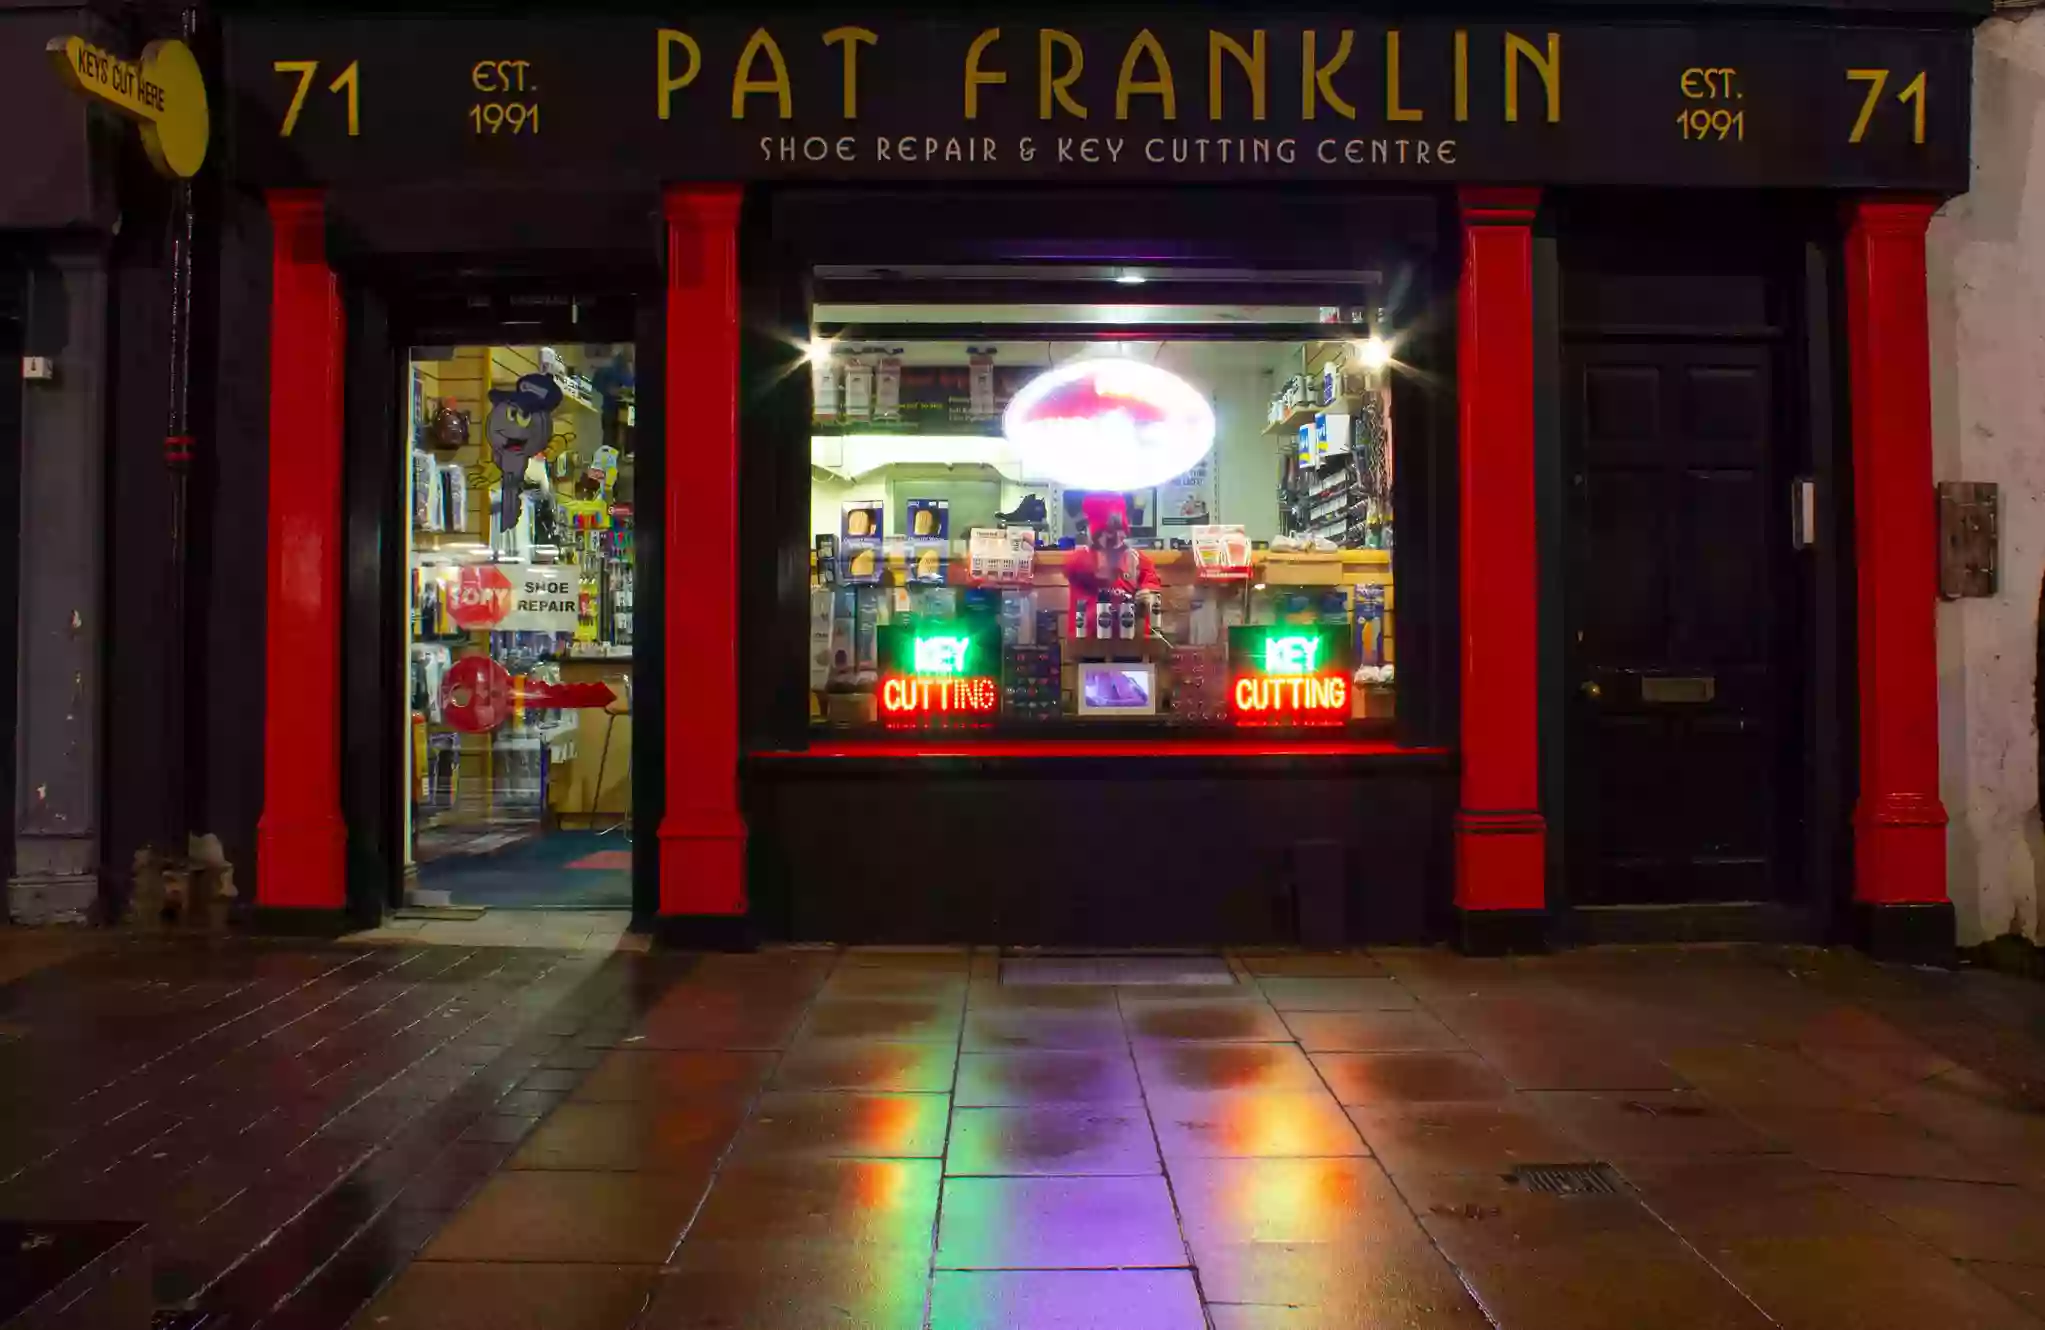 Pat Franklin's Shoe Repair & Key Cutting